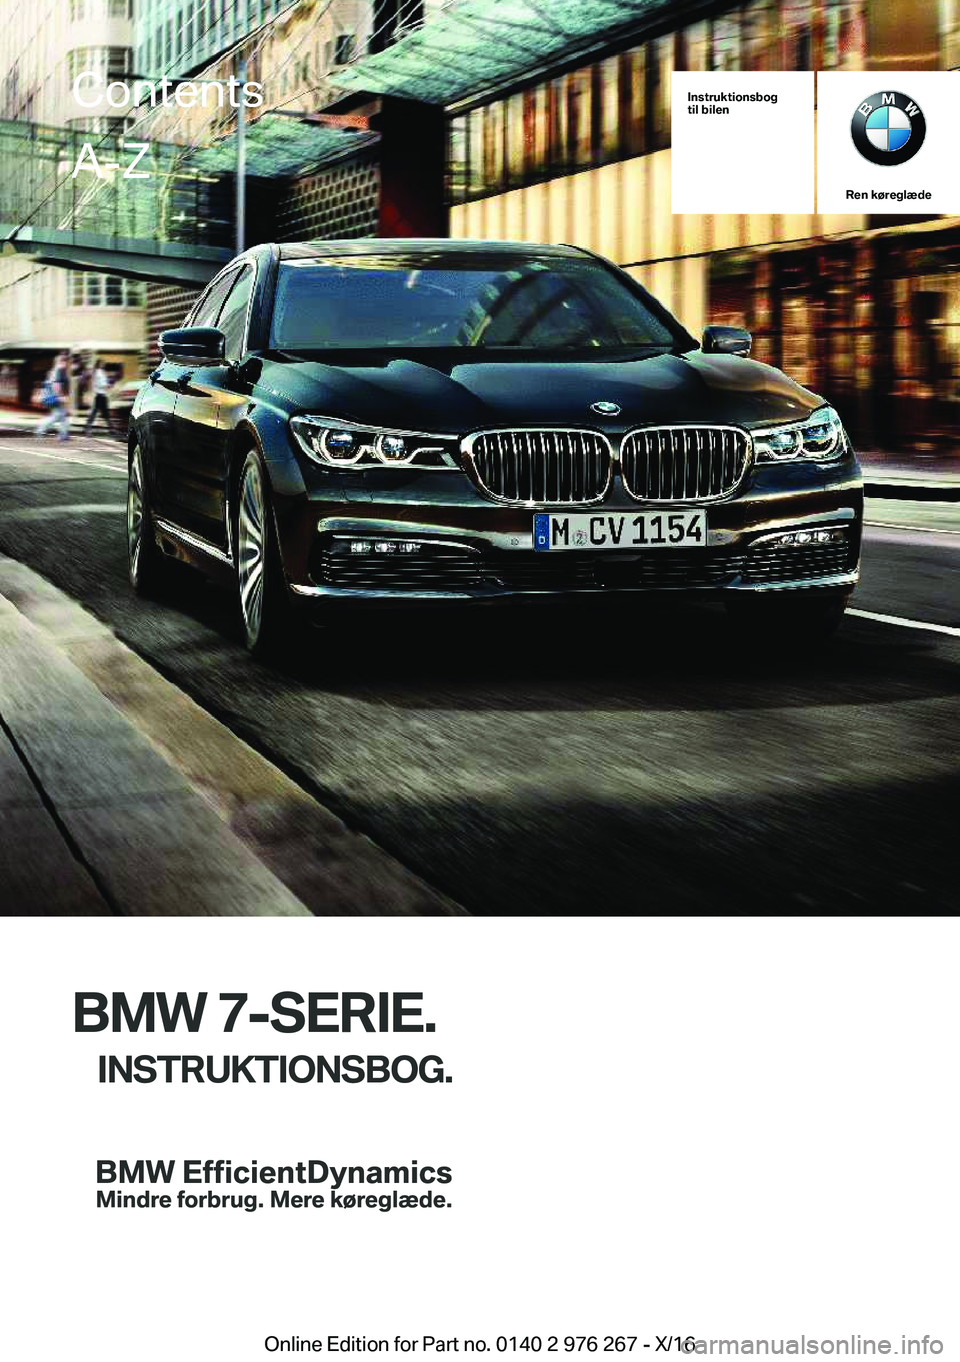 BMW 7 SERIES 2017  InstruktionsbØger (in Danish) �I�n�s�t�r�u�k�t�i�o�n�s�b�o�g
�t�i�l��b�i�l�e�n
�R�e�n��k�